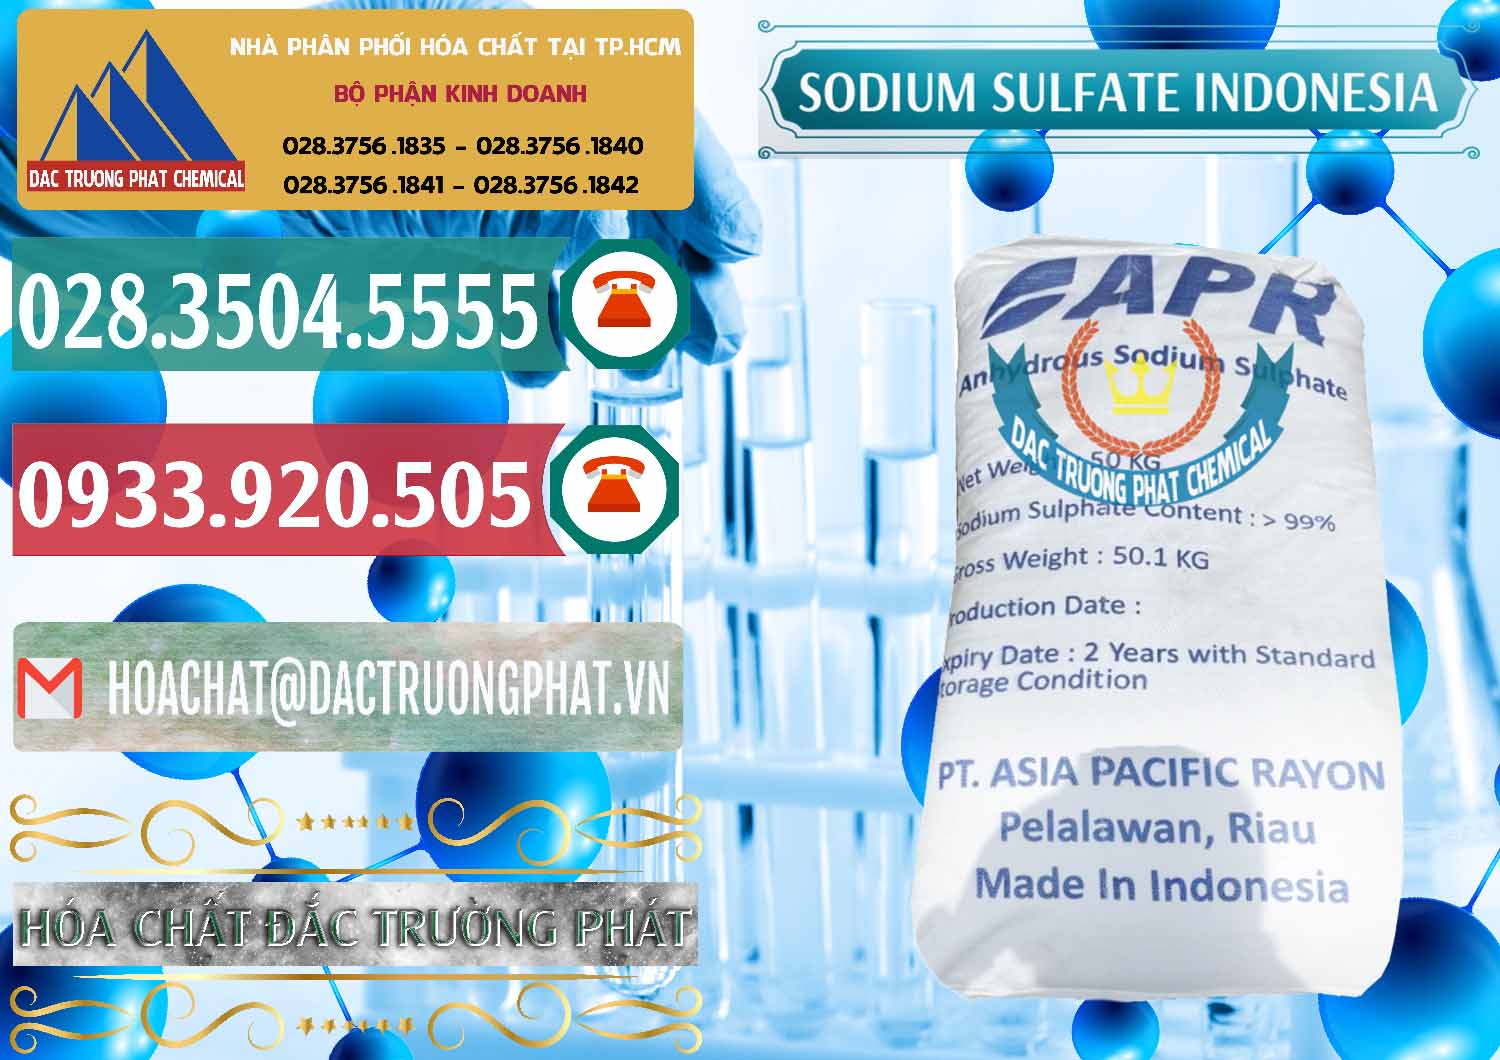 Cty chuyên cung cấp - bán Sodium Sulphate - Muối Sunfat Na2SO4 APR Indonesia - 0460 - Nơi phân phối & bán hóa chất tại TP.HCM - muabanhoachat.vn